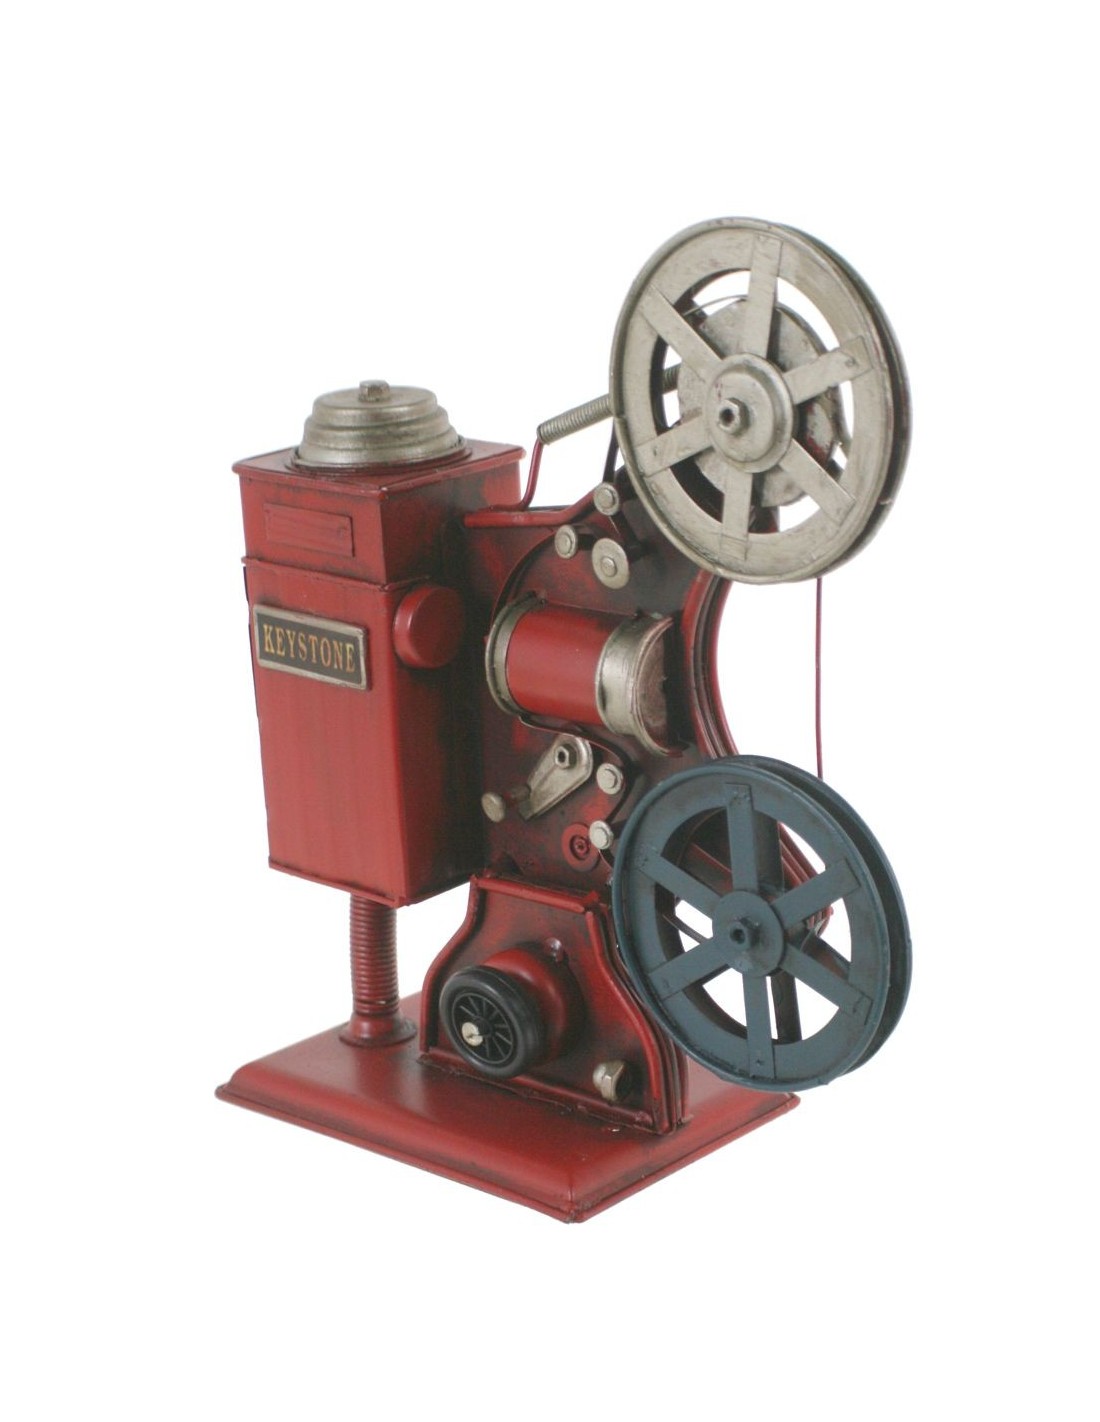 Réplica de proyector de cine estilo vintage de metal en color granate envejecido decoración hogar